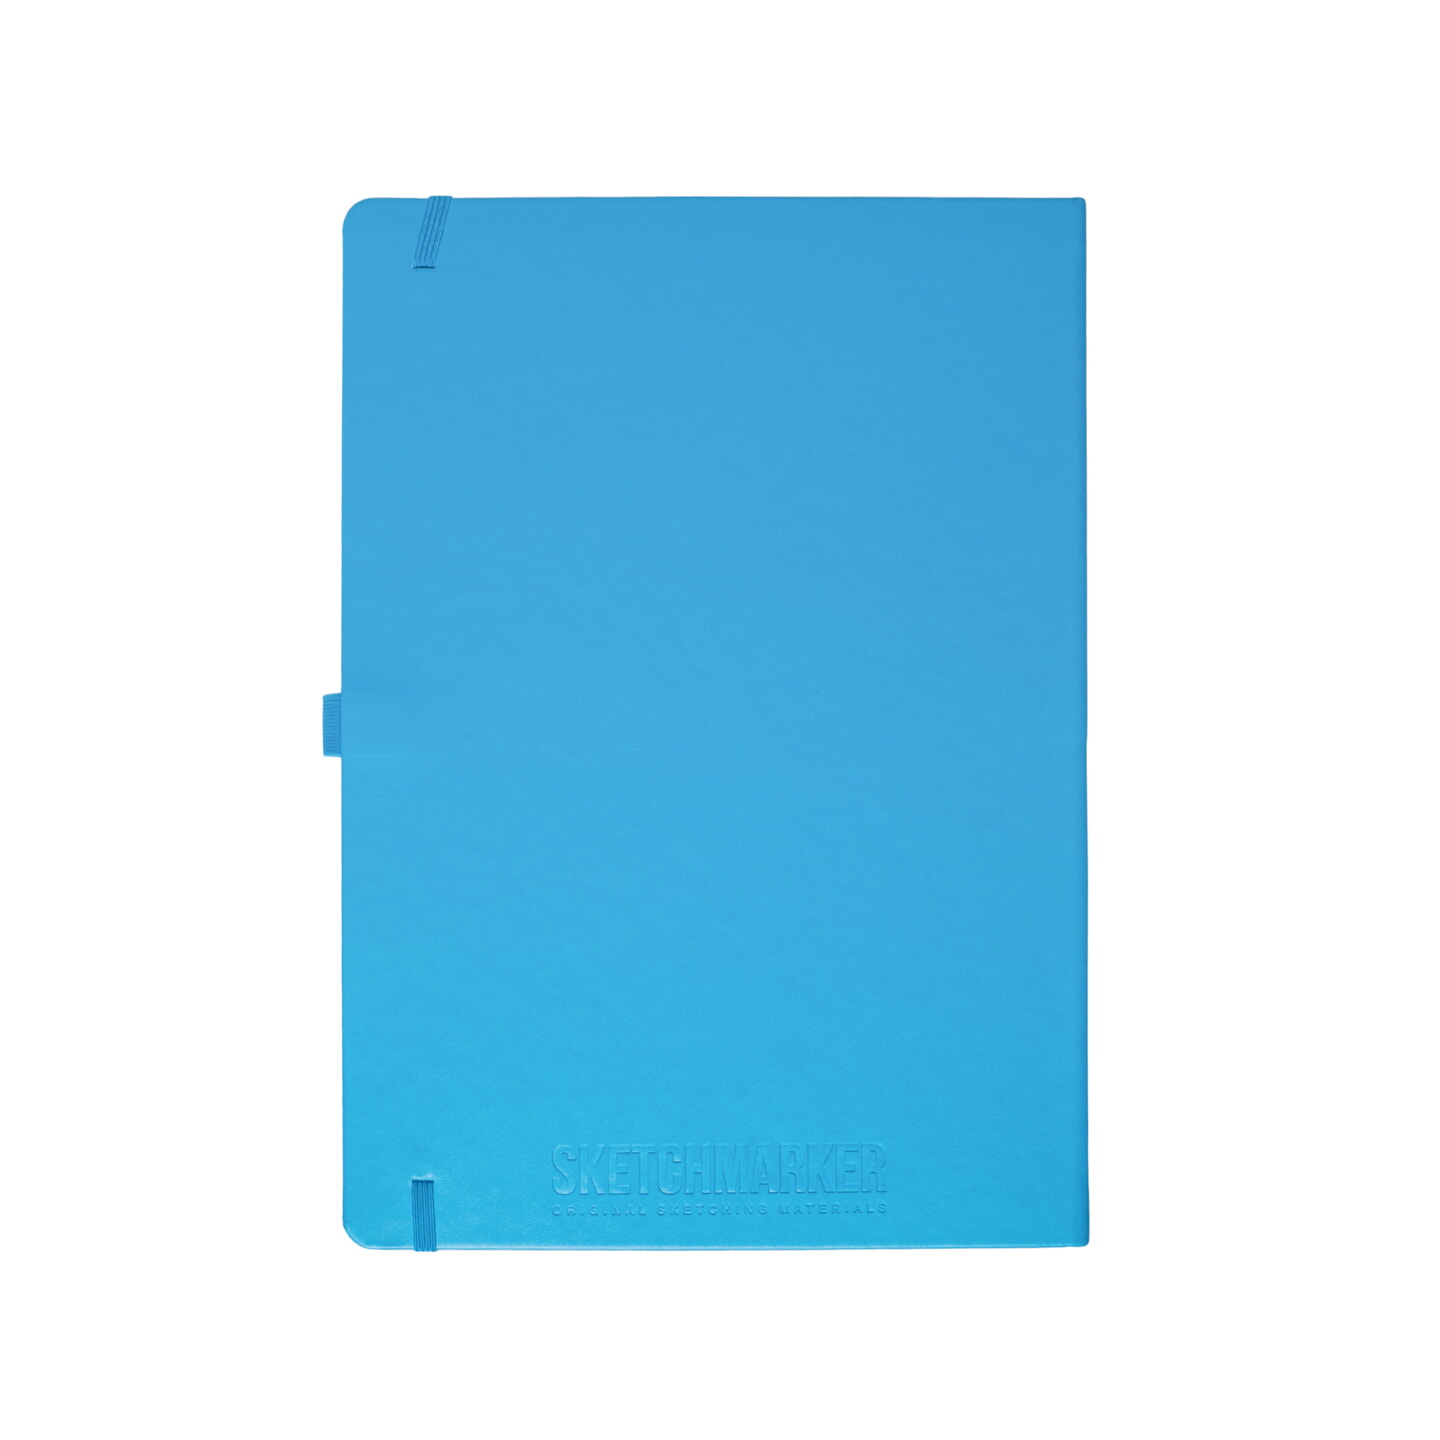 Блокнот для зарисовок Sketchmarker 140г/кв.м 21*29.7см 80л твердая обложка Синий Карибский